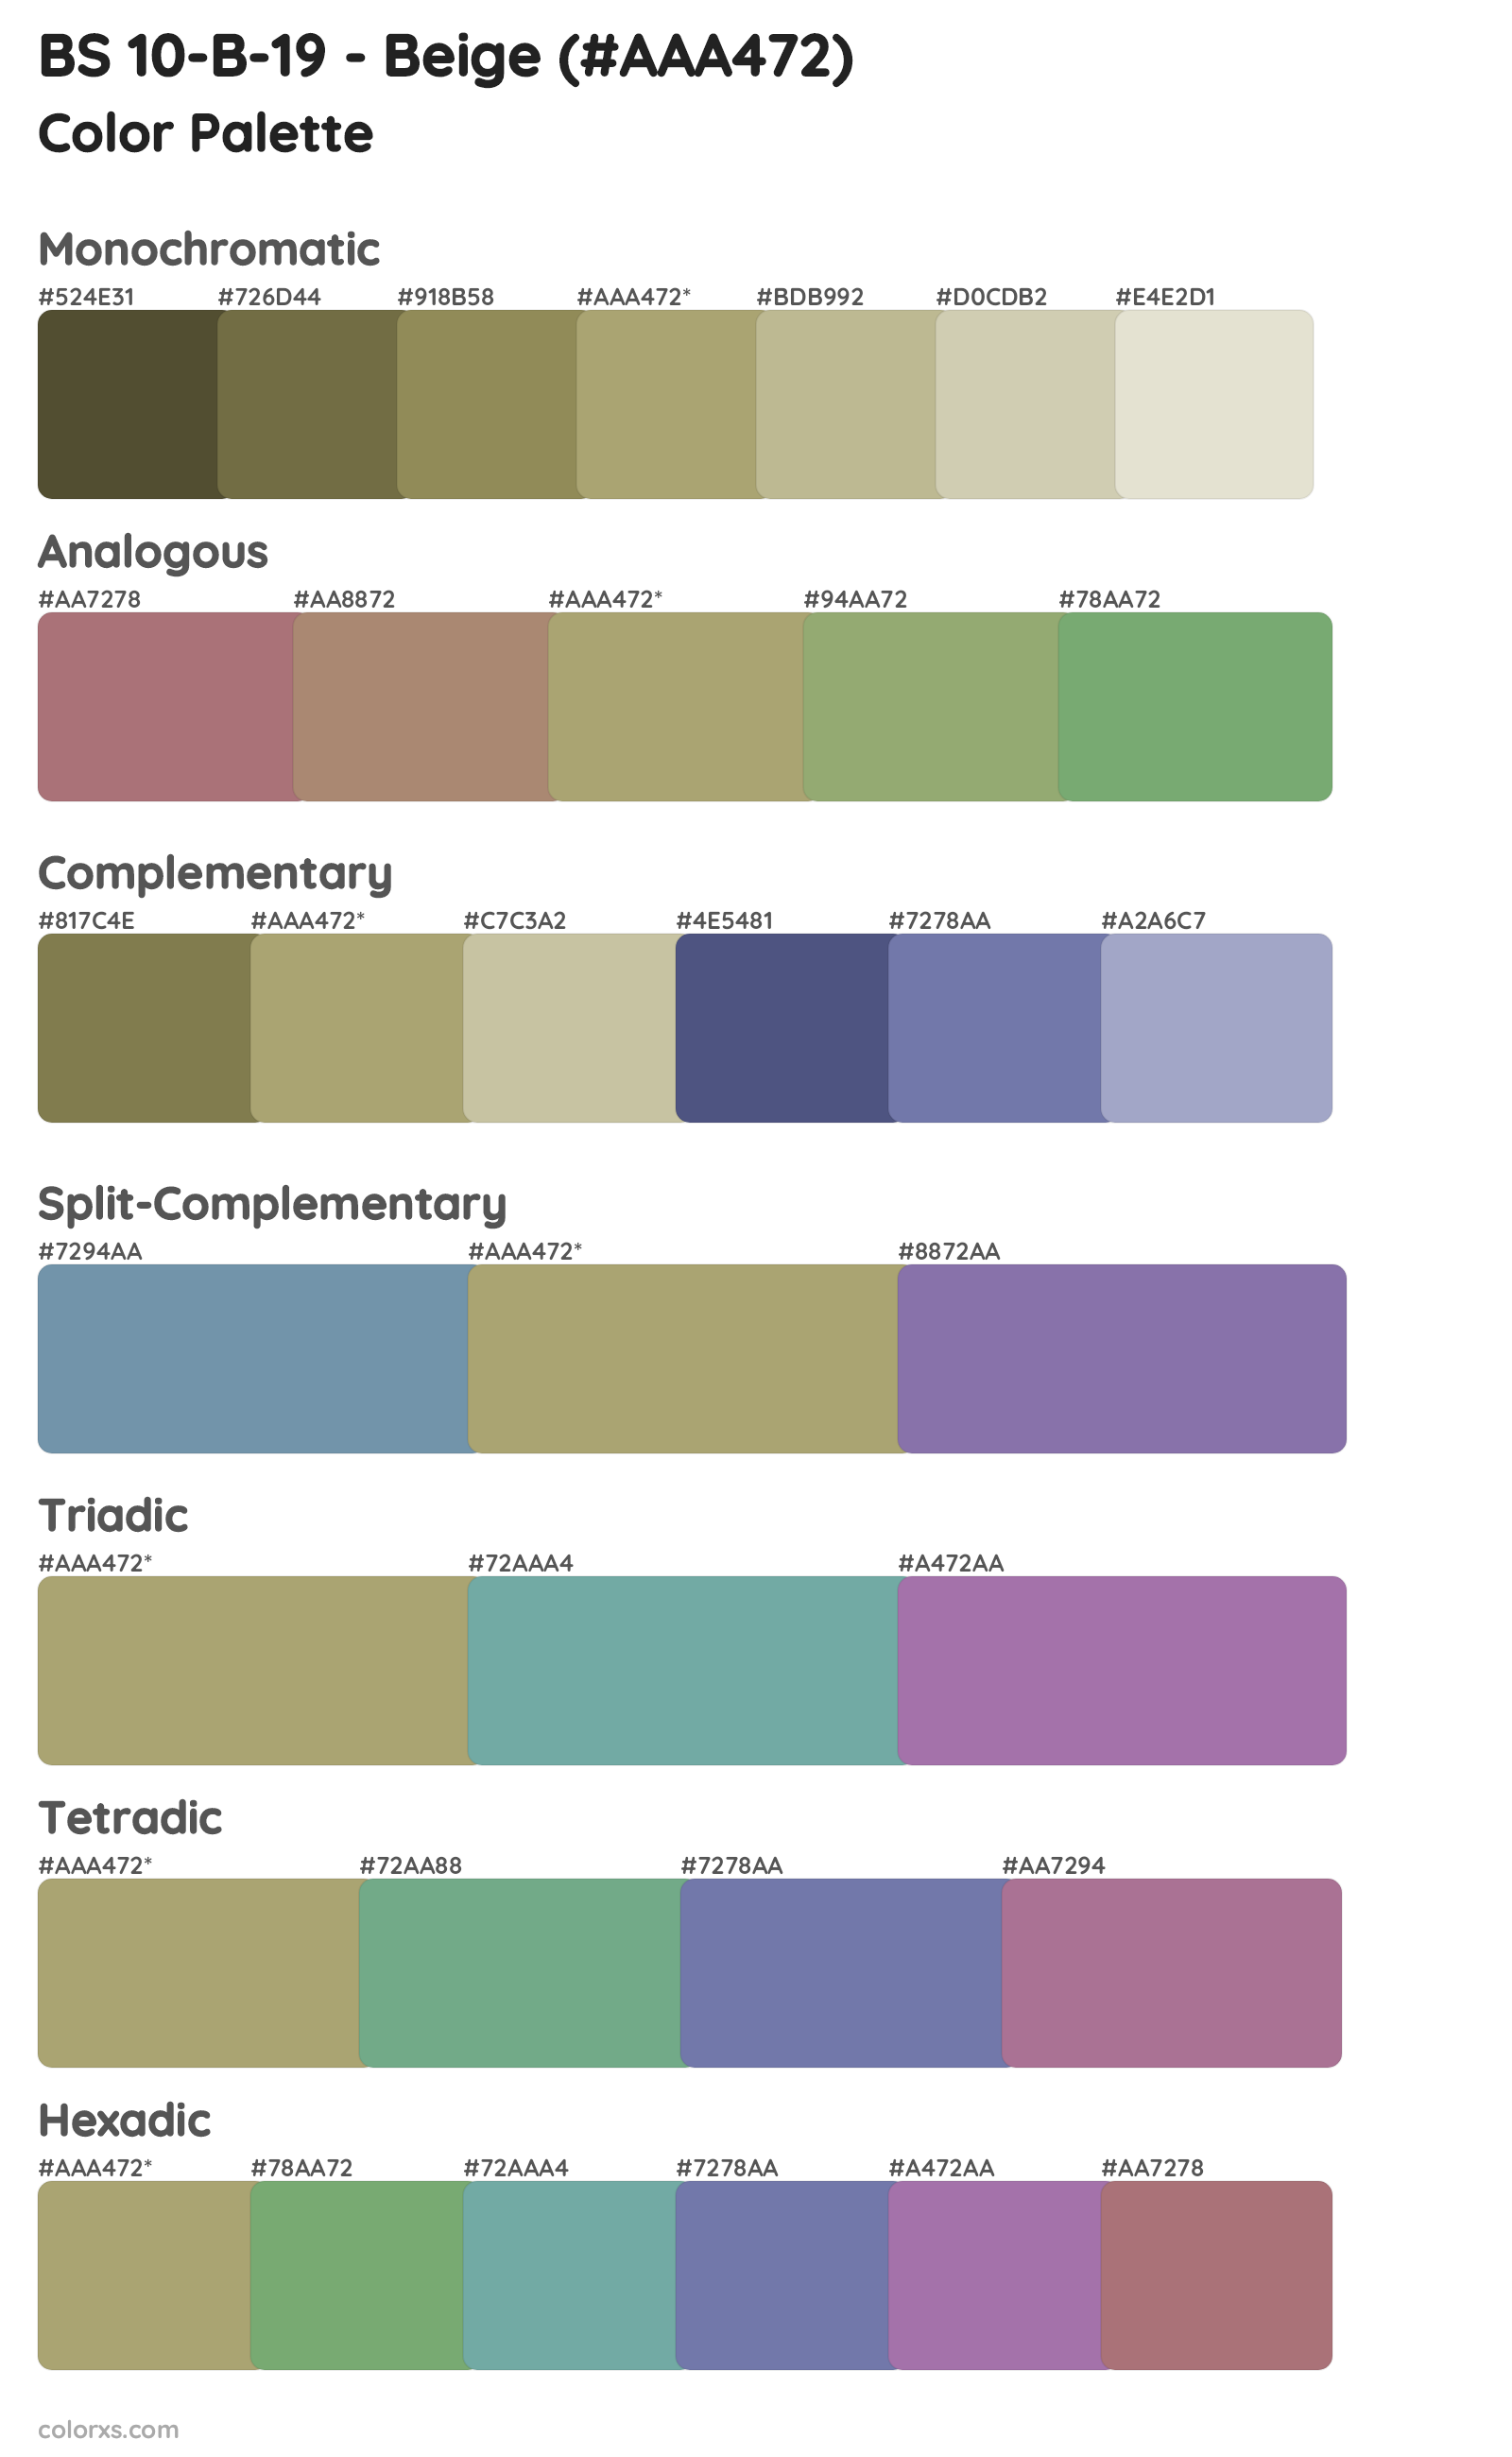 BS 10-B-19 - Beige Color Scheme Palettes